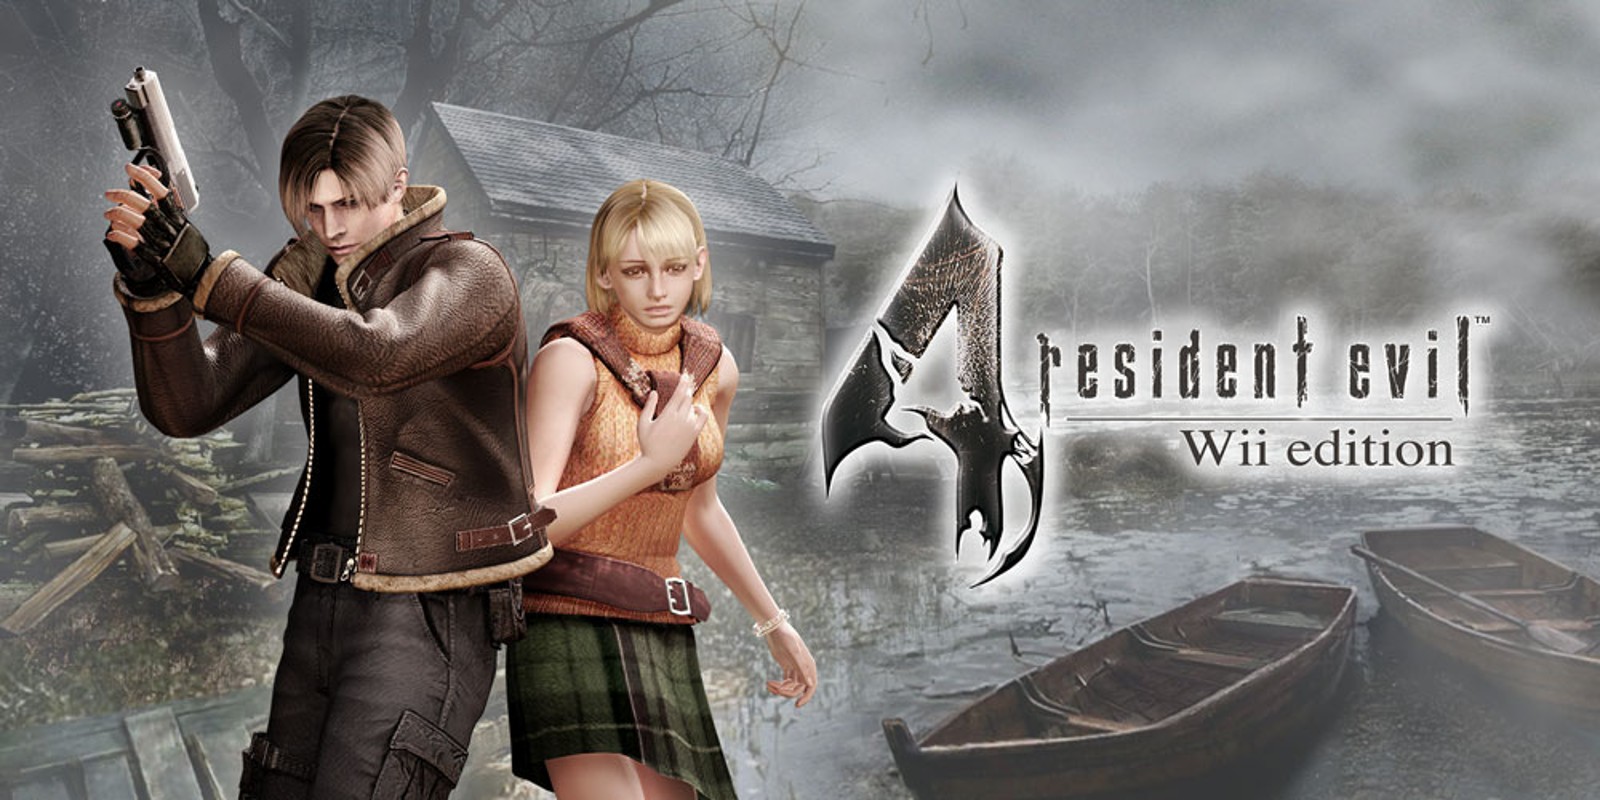 Прохождение игры Resident Evil 4 - Ultimate HD Edition # 29 (Русская версия игры) PC - Ver. HD Full.